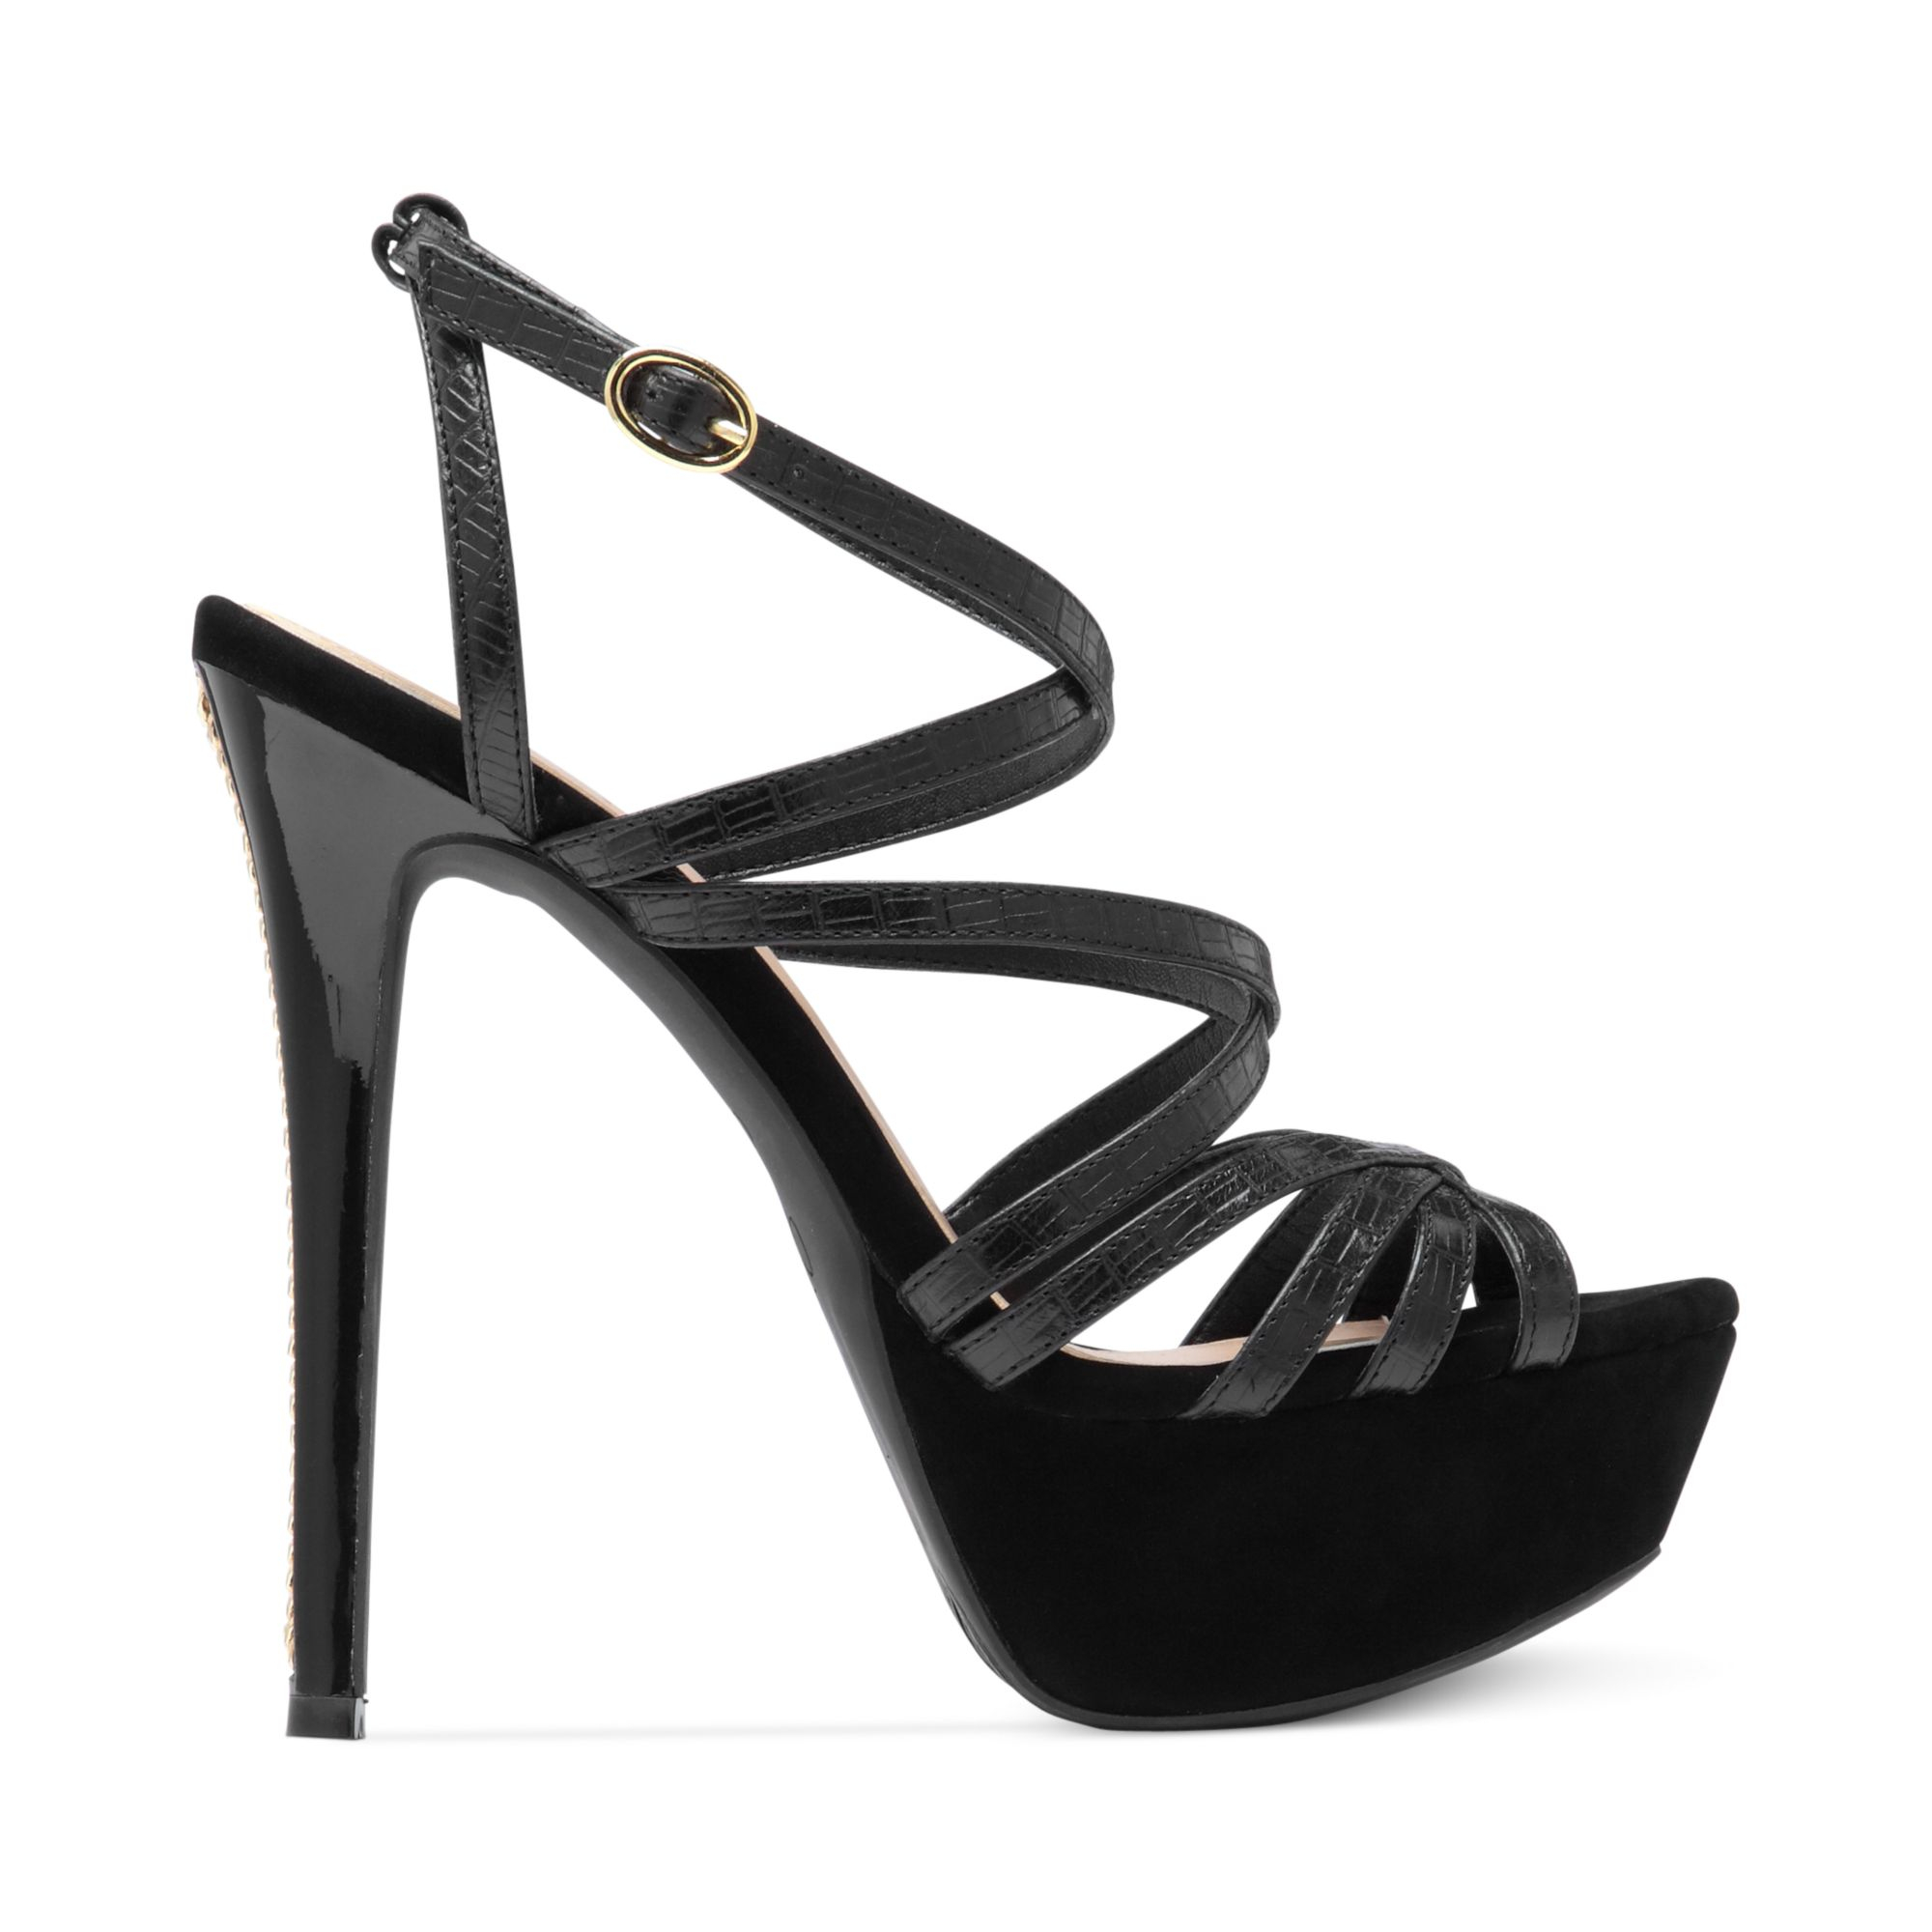 Jessica simpson Evans Strappy Platform Sandals in Black | Lyst